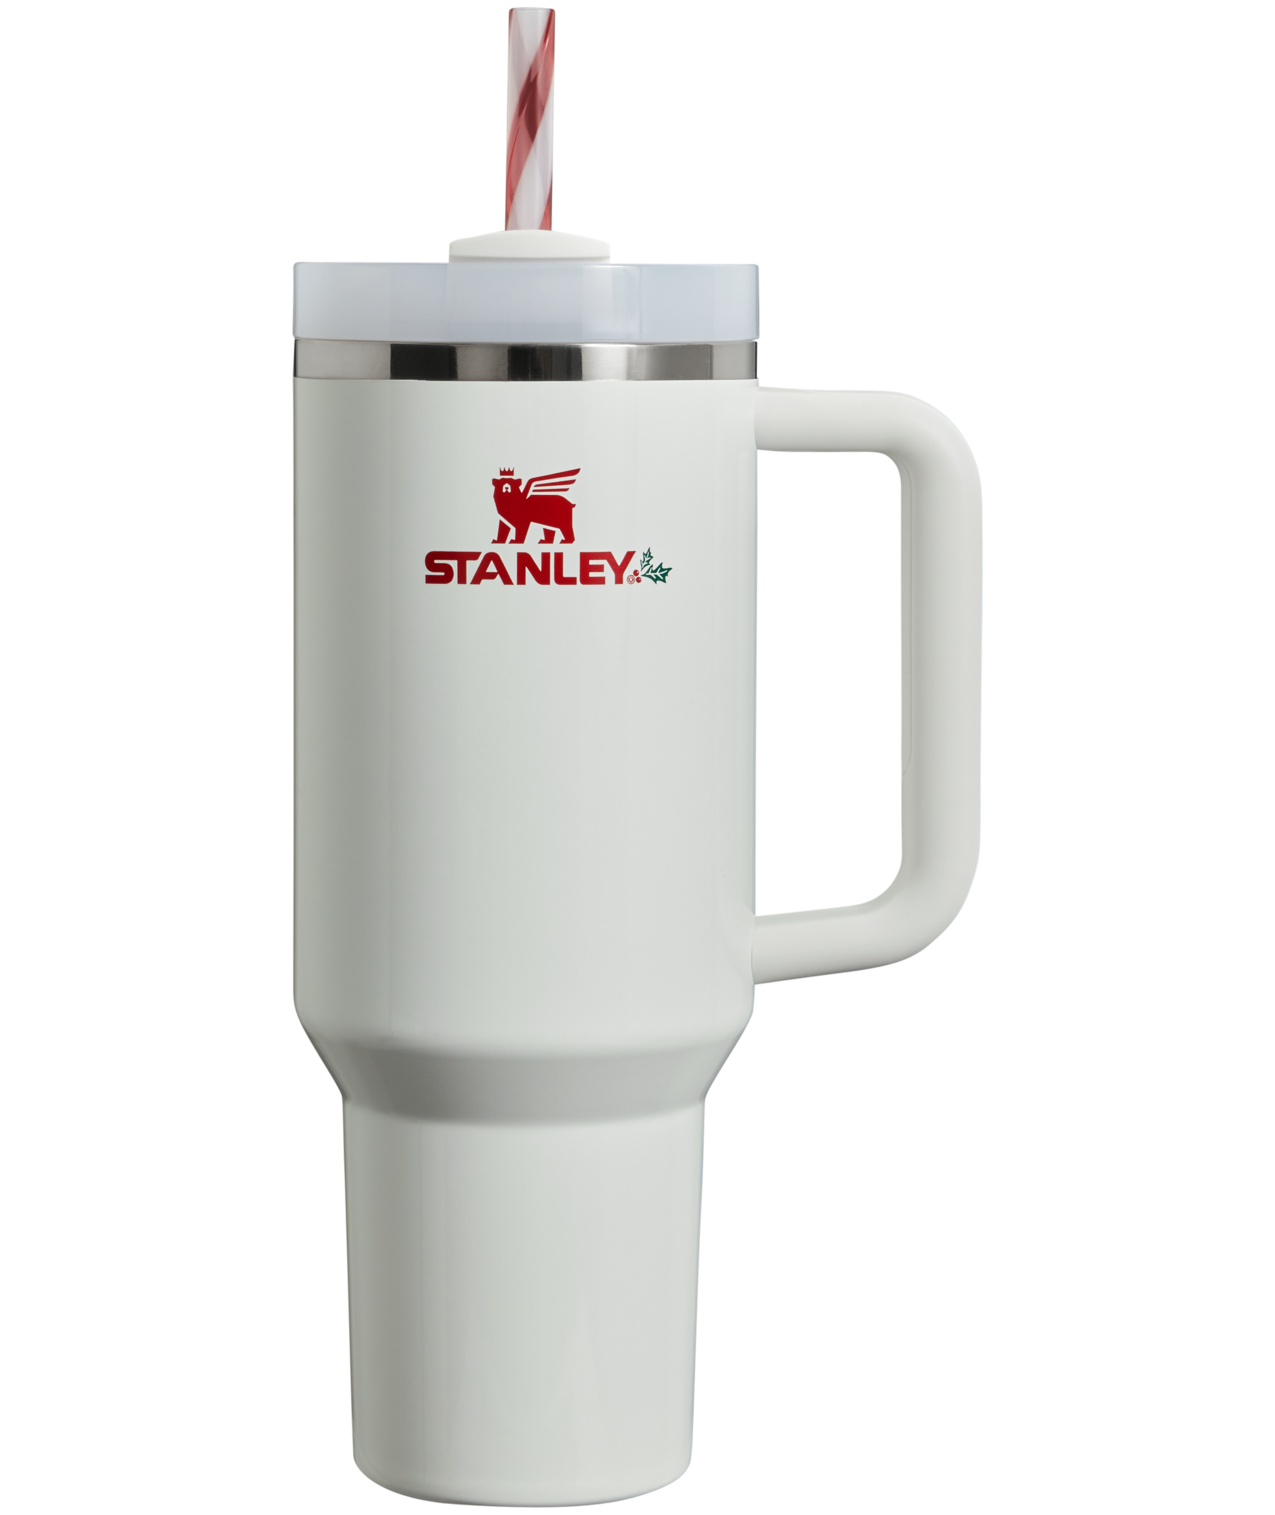 Stanley 40 oz Quencher H2.0 FlowState Tumbler - Polar Swirl